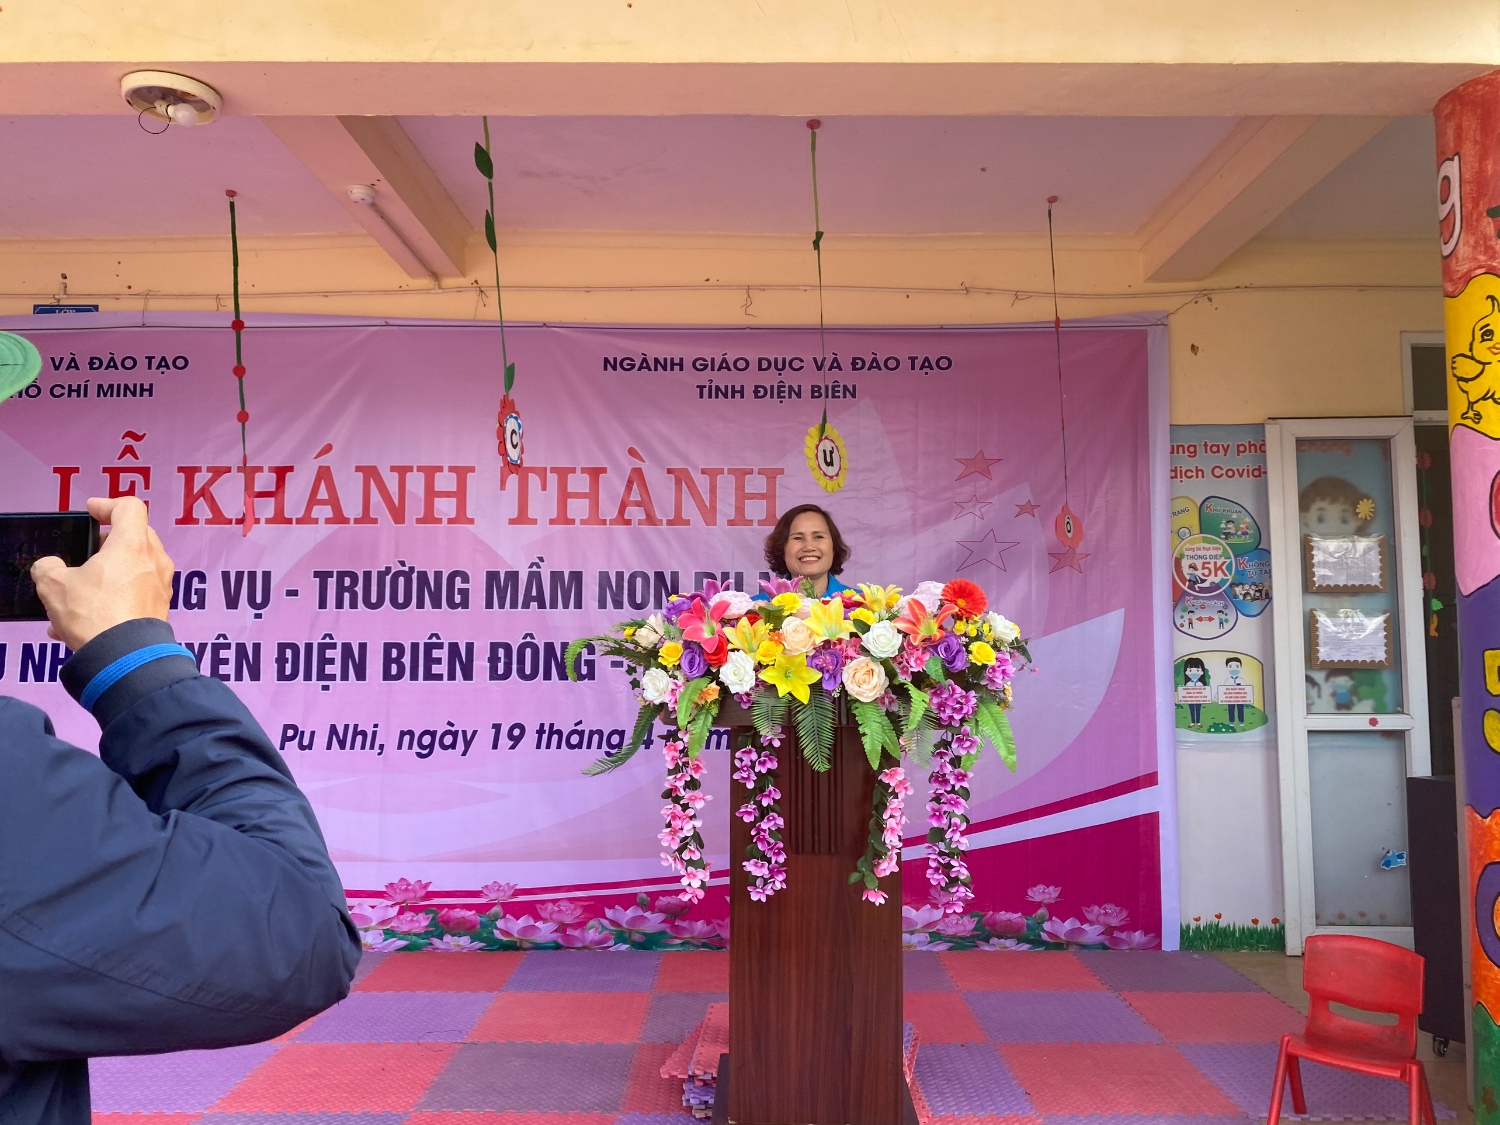 ĐC Nguyễn T Hường Phó phòng GDĐT huyện ĐBĐ phát biểu tại buổi lễ